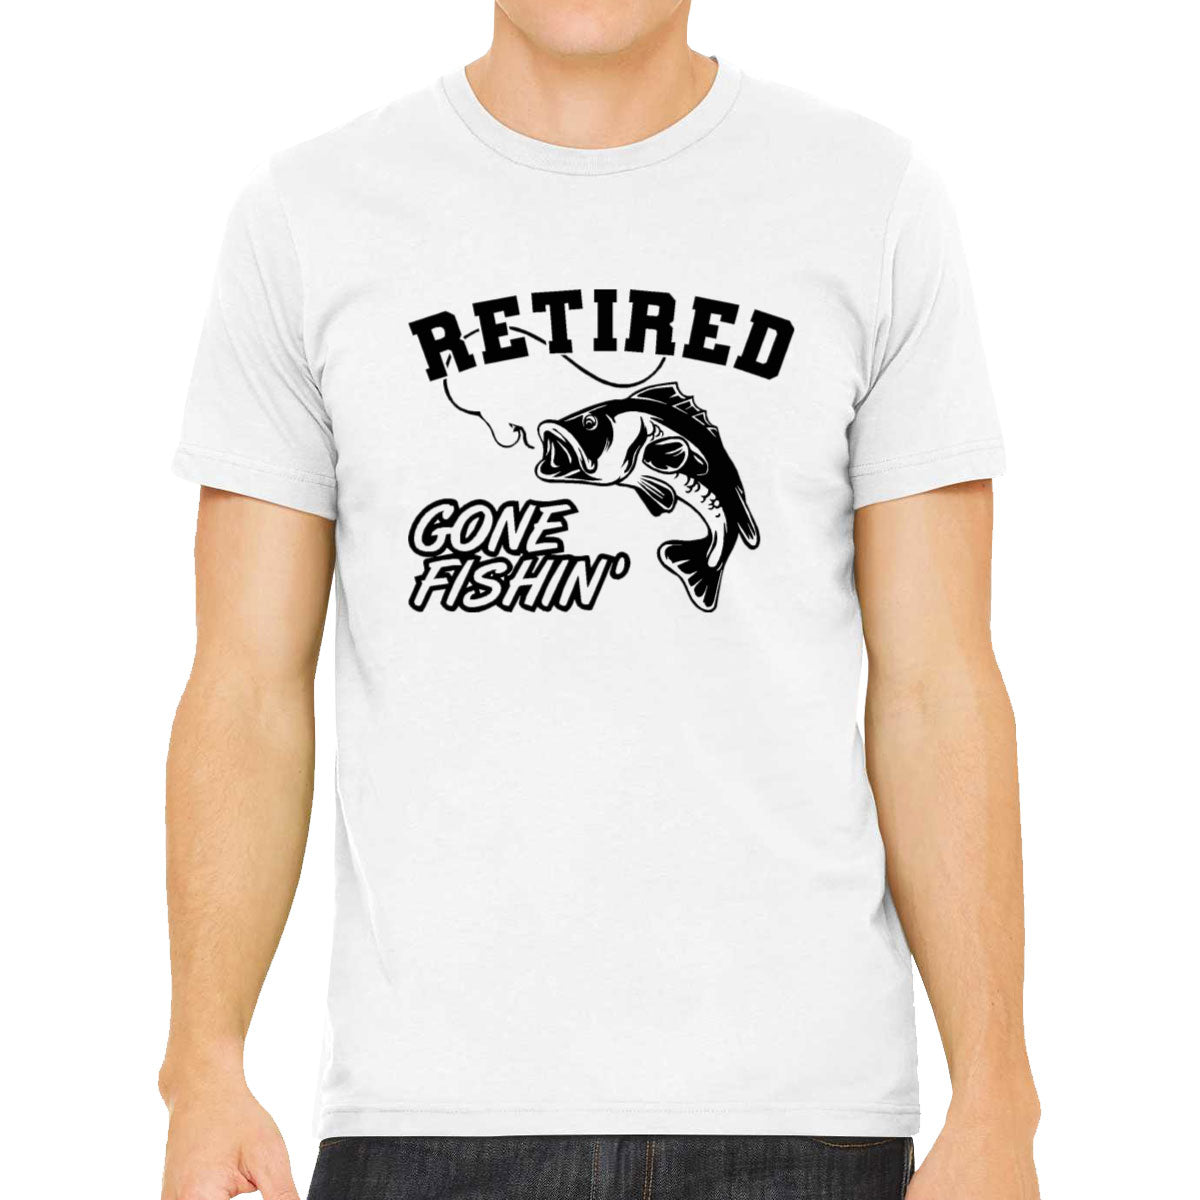 Retired, Gone Fishing Men's T-shirt